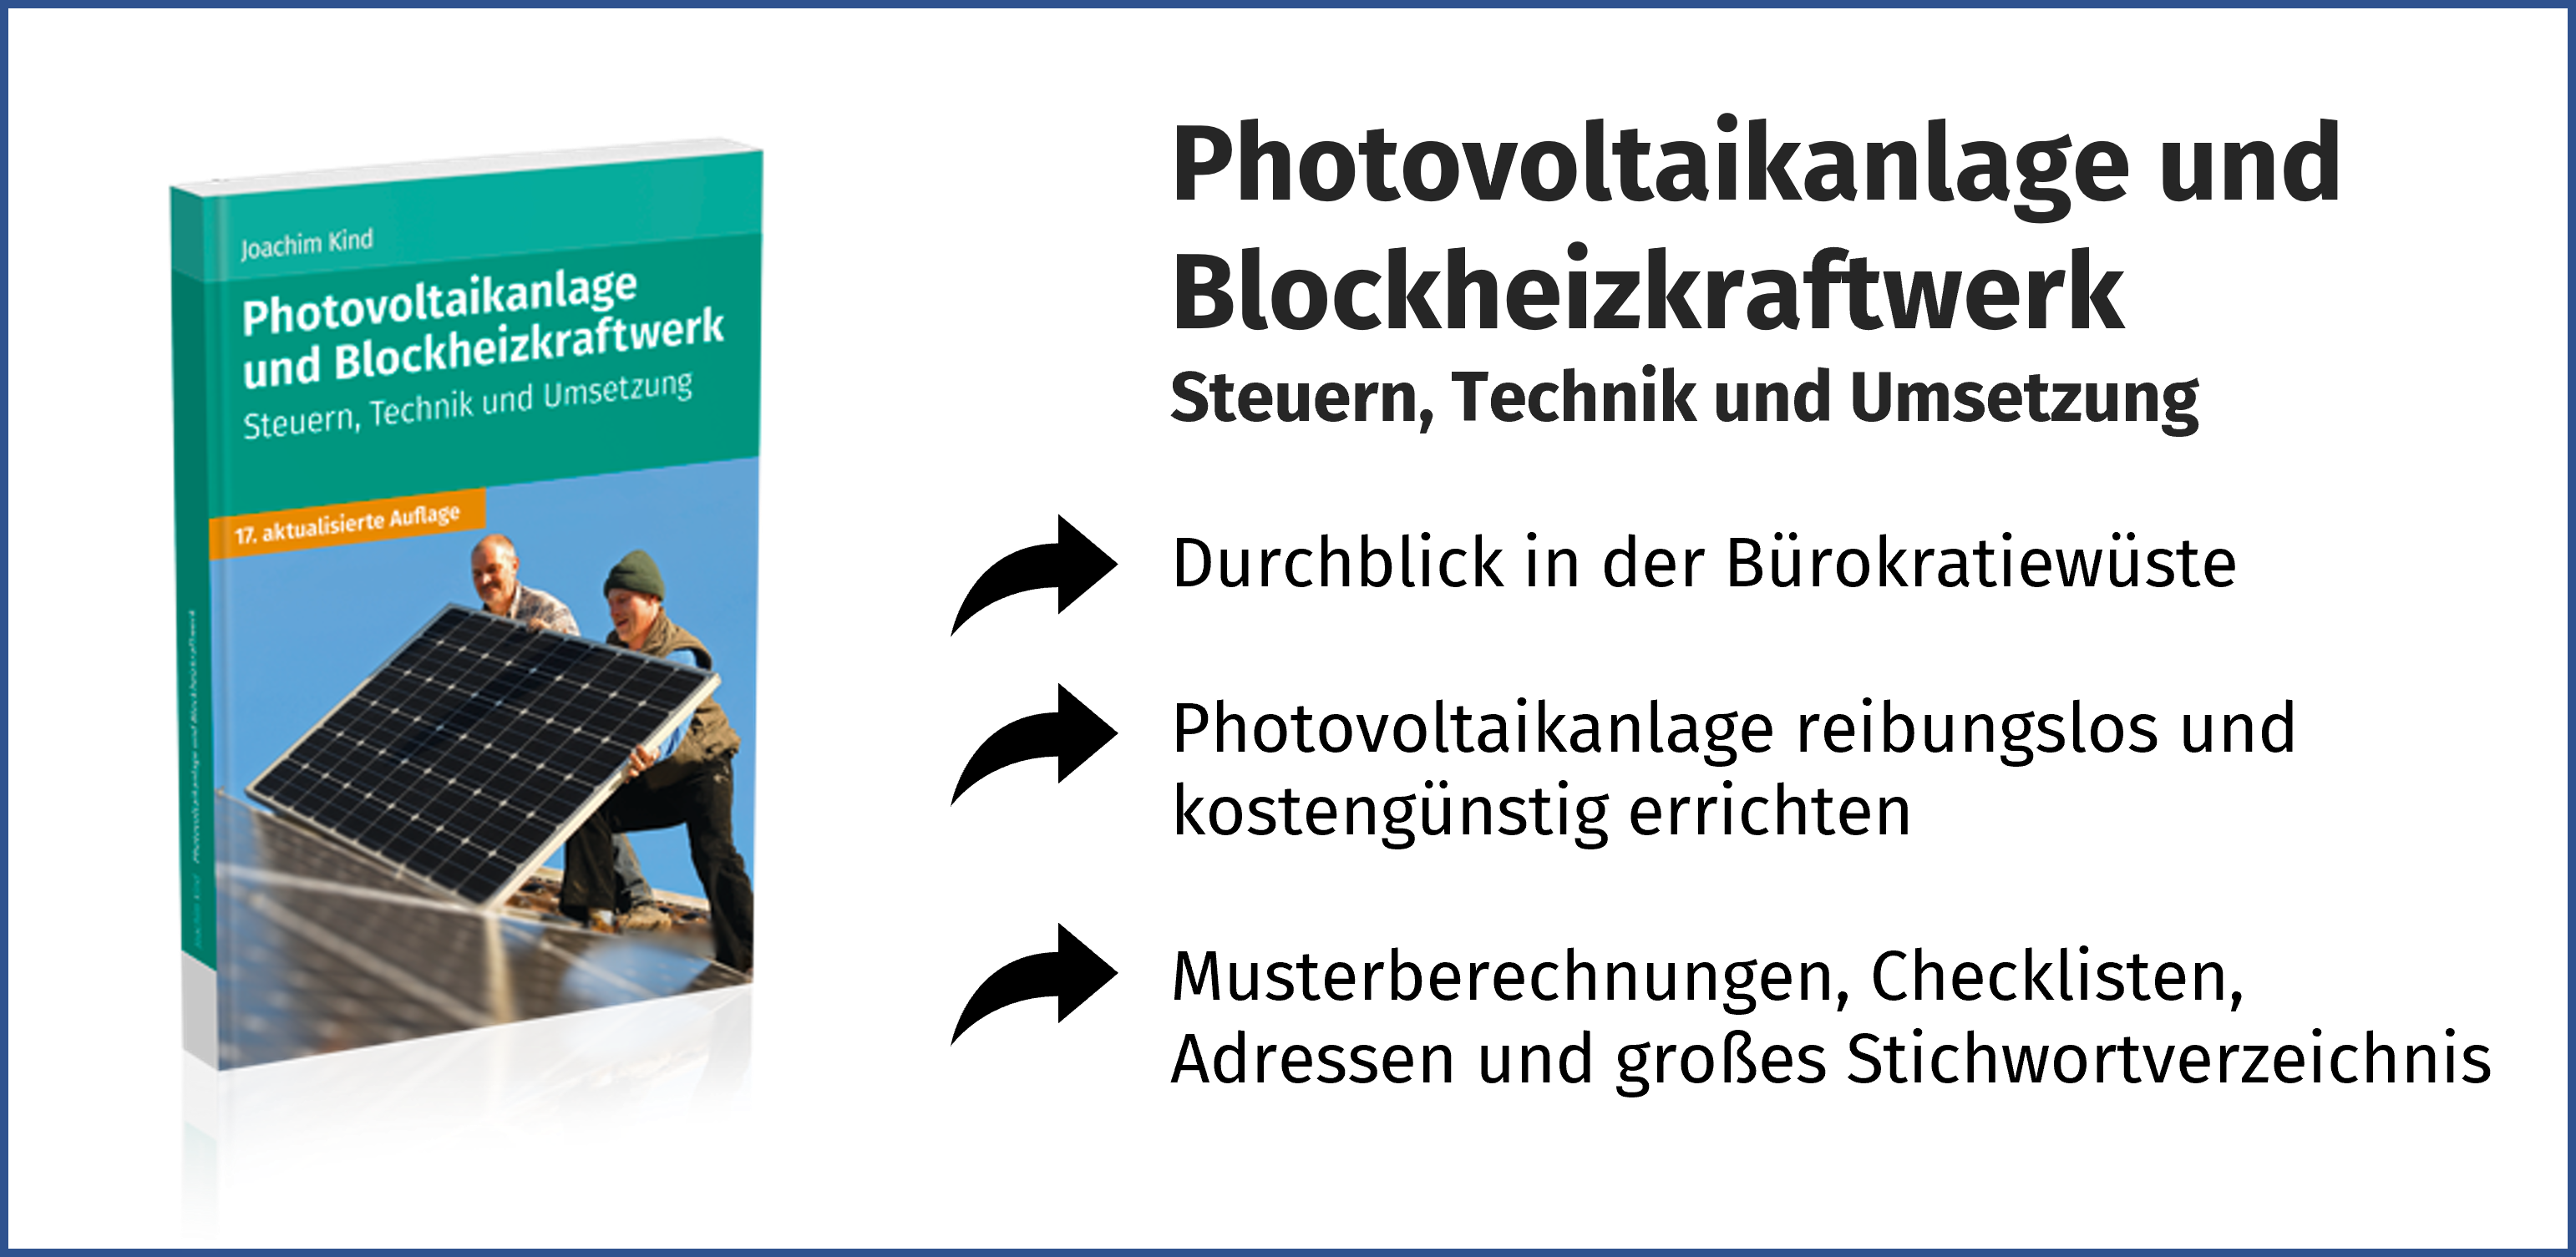 Photovoltaikanlage und Blockheizkraftwerk - Steuern, Technik und Umsetzung